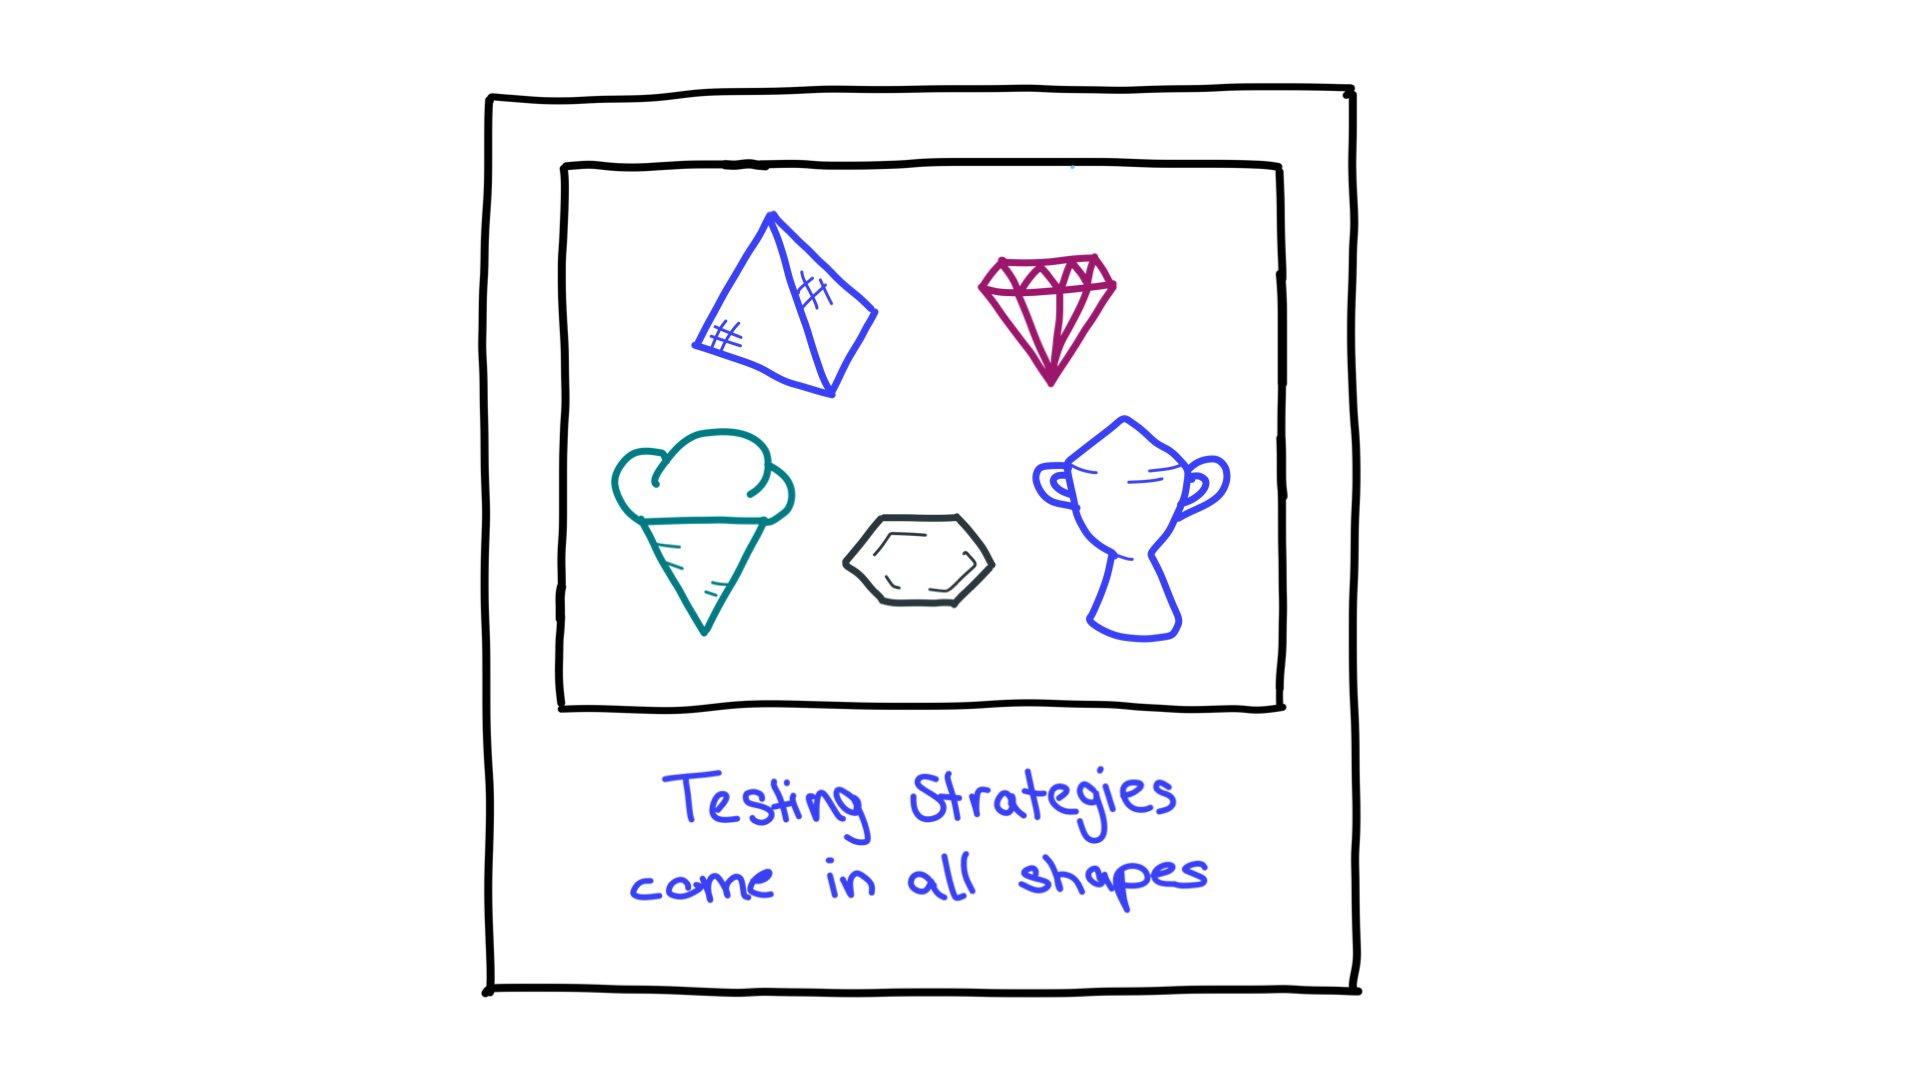 Przykłady kształtów strategii testowania: piramida, zaokrąglony romb, rożek lodów, sześciokąt i trofeum.